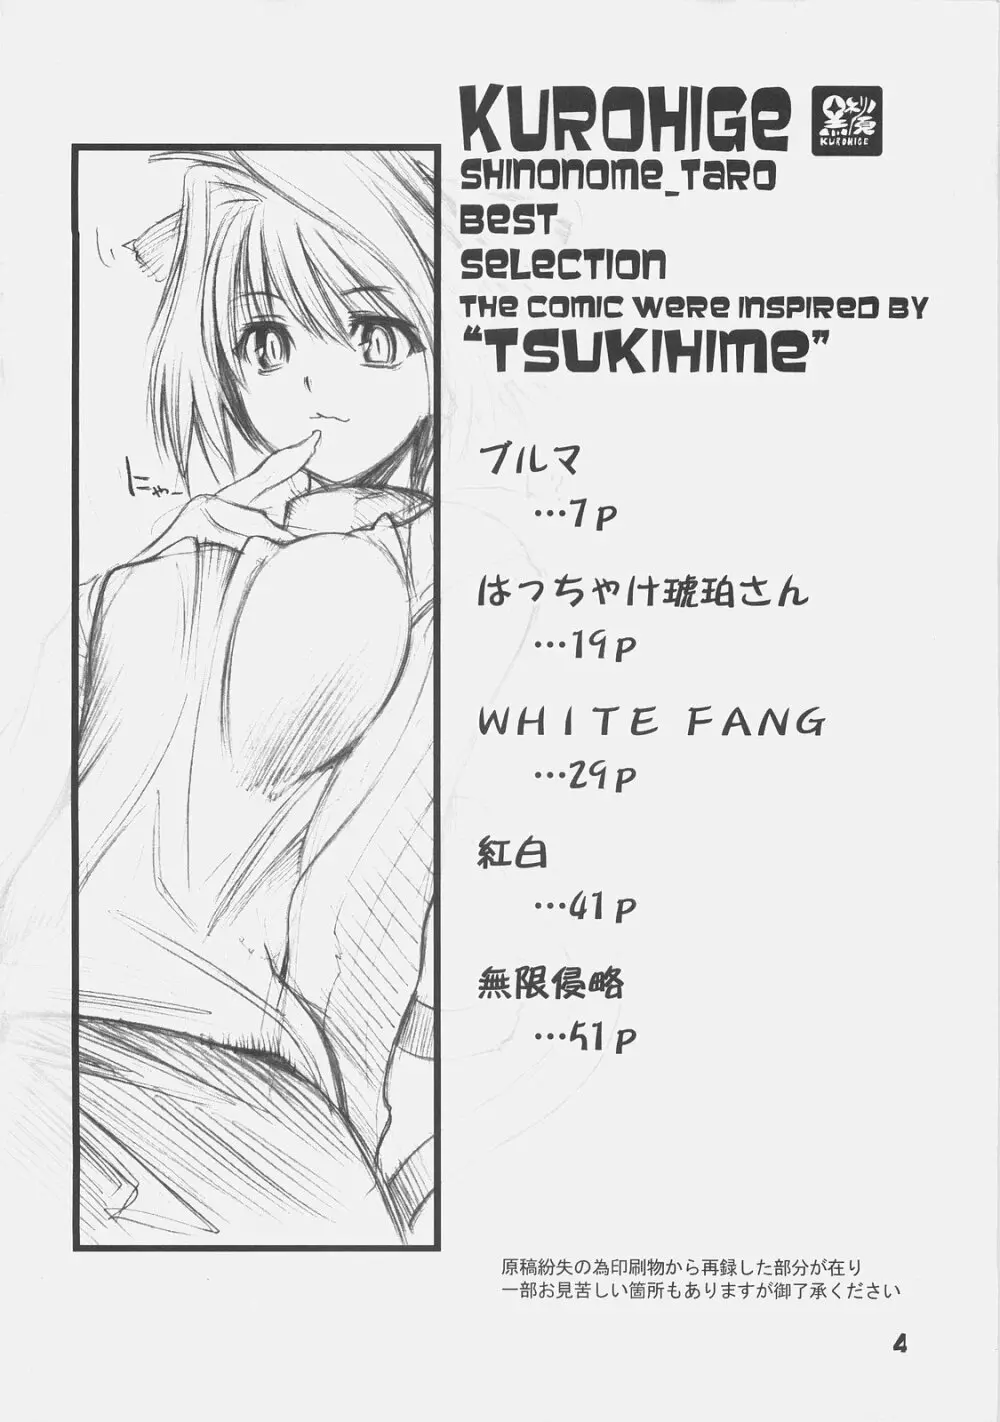 KUROHIGE SHINONOME_TaRO BEST SELECTION “TSUKIHIME” 3ページ